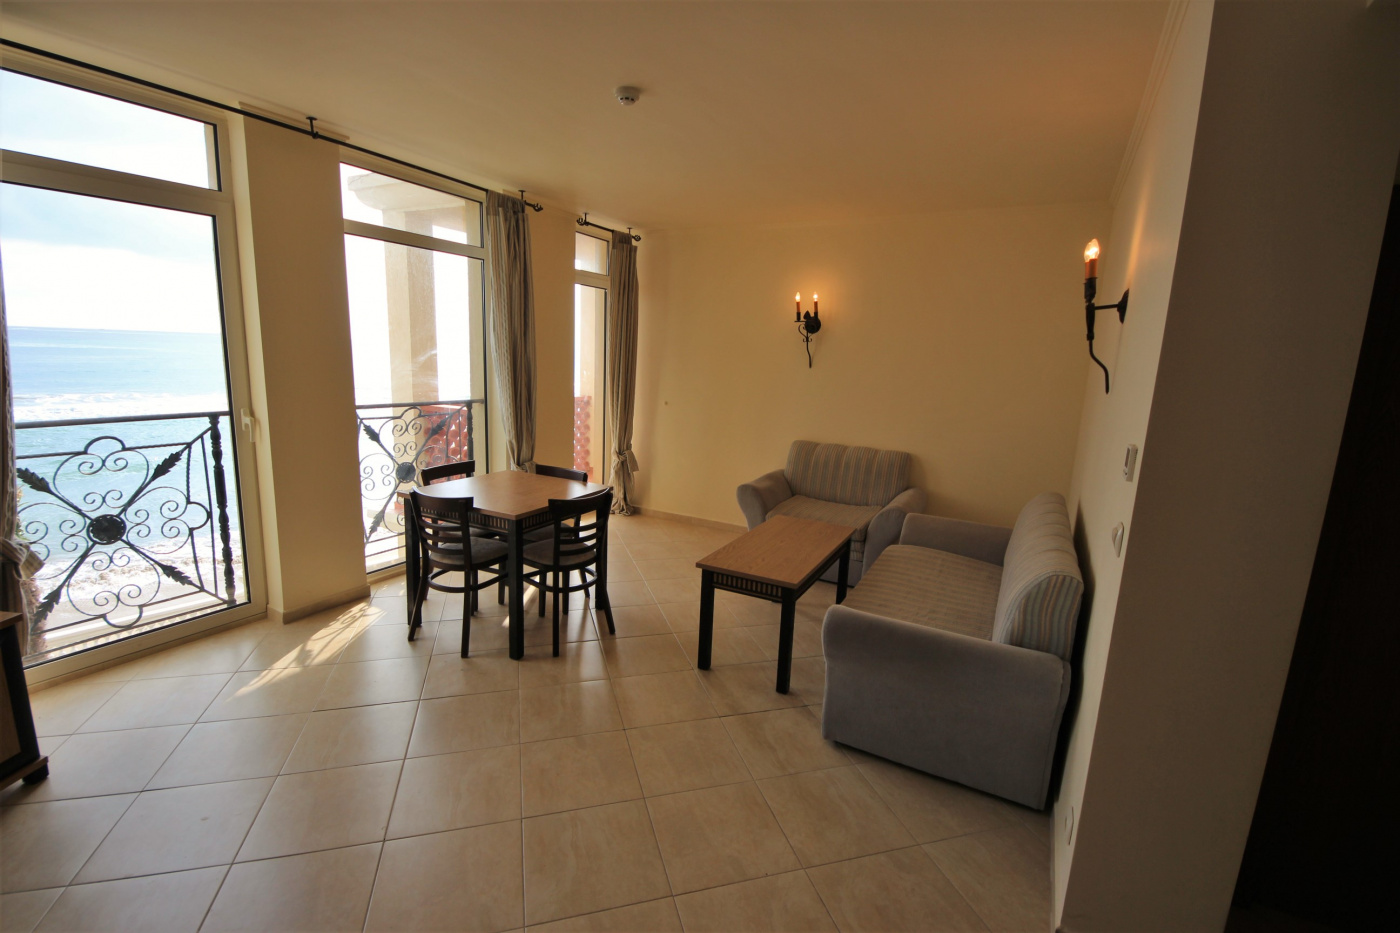 Andalucia Beach apartment C 202